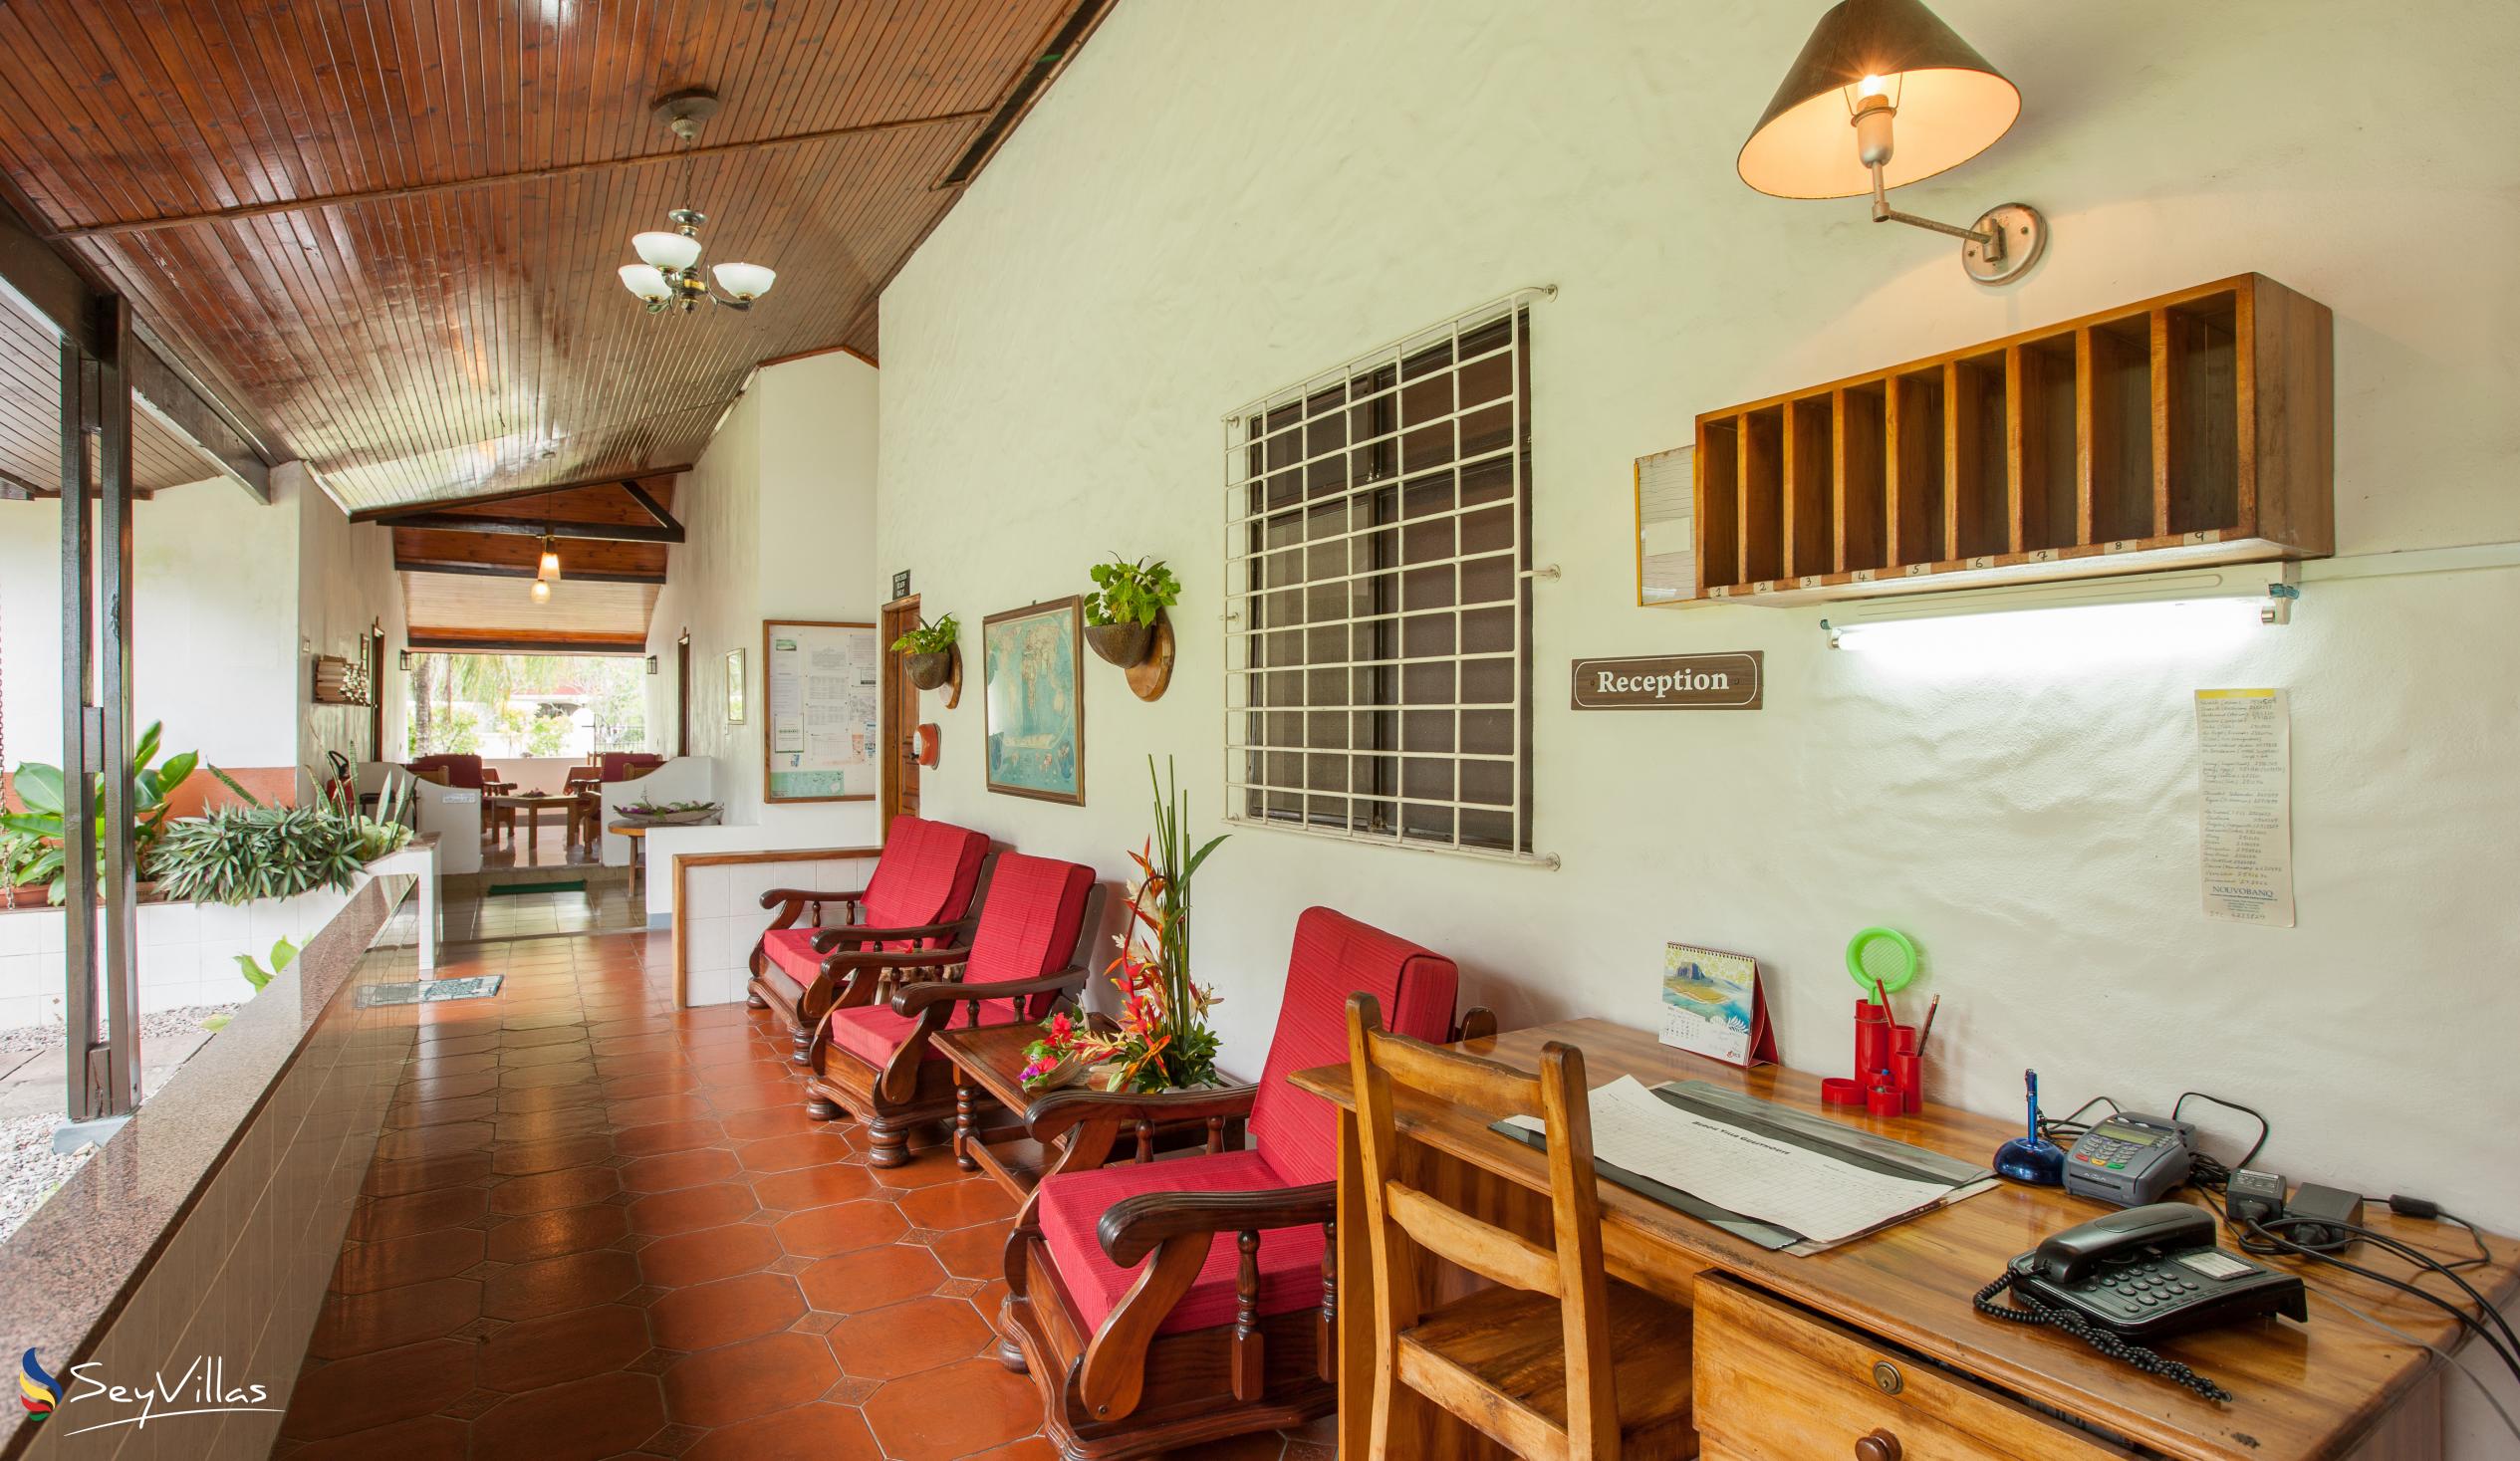 Foto 11: Beach Villa Guesthouse - Innenbereich - Praslin (Seychellen)